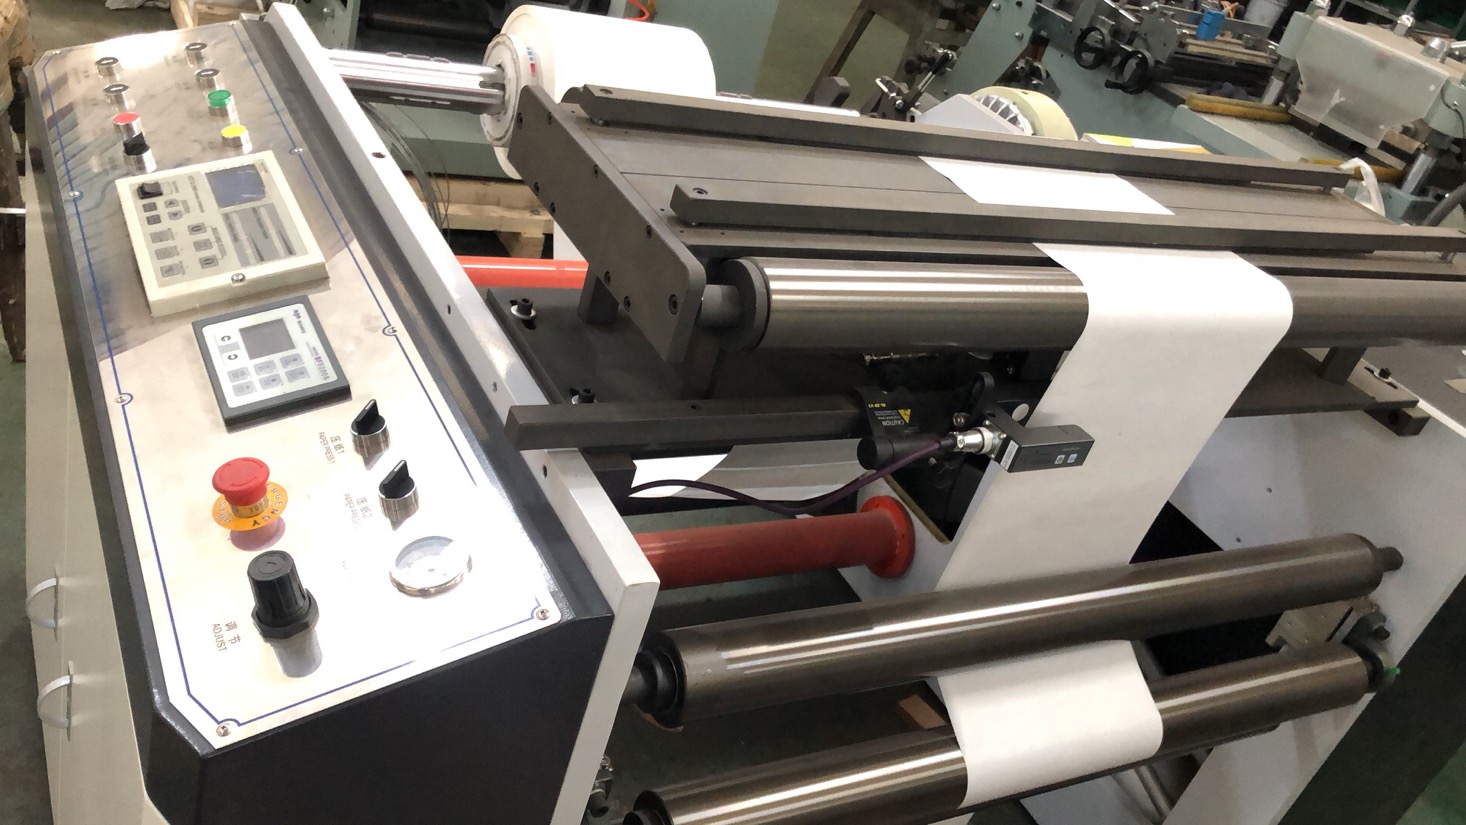 Máquina de impresión flexográfica con bandeja de papel caliente especial HJ-950